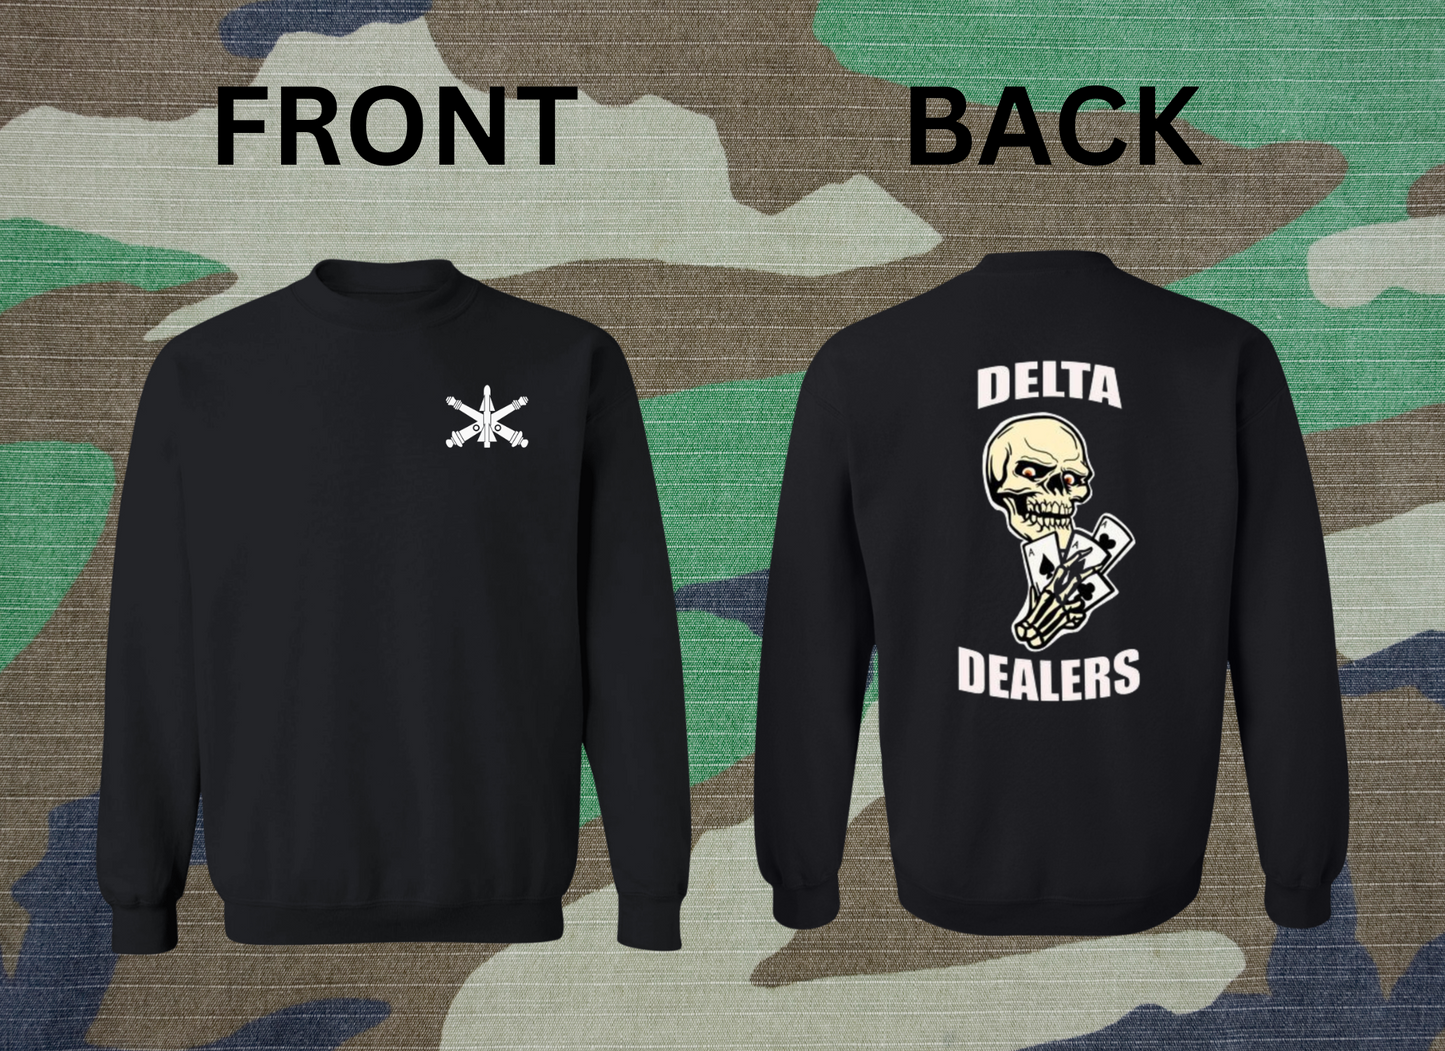 Delta Dealers Sweatshirt